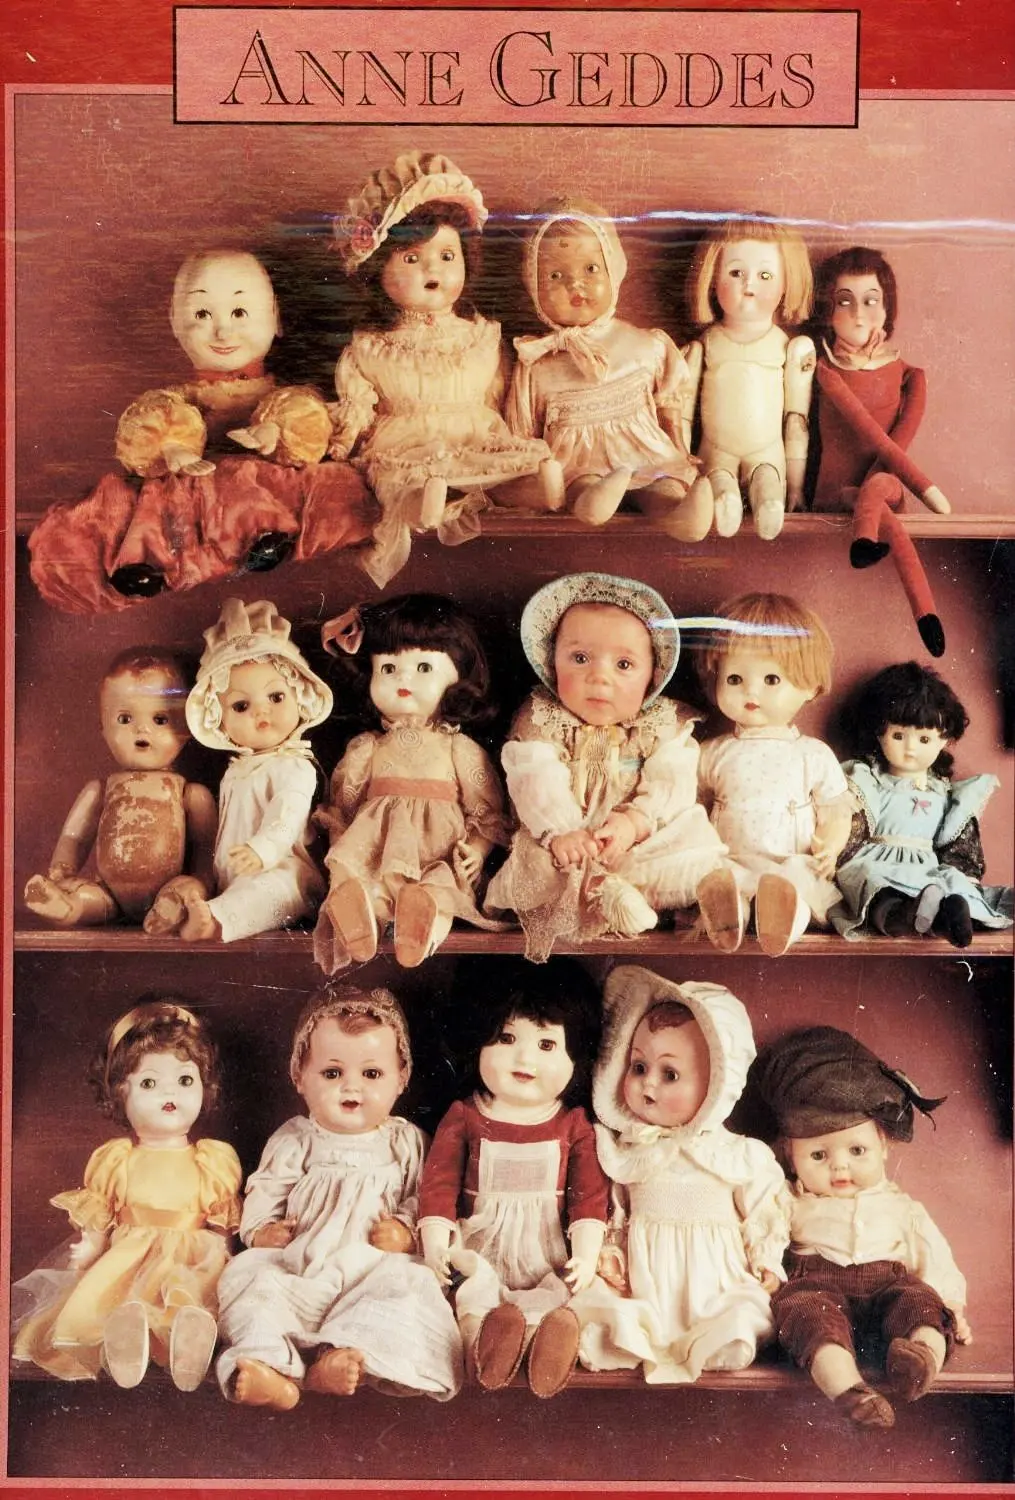 anne geddes dolls worth